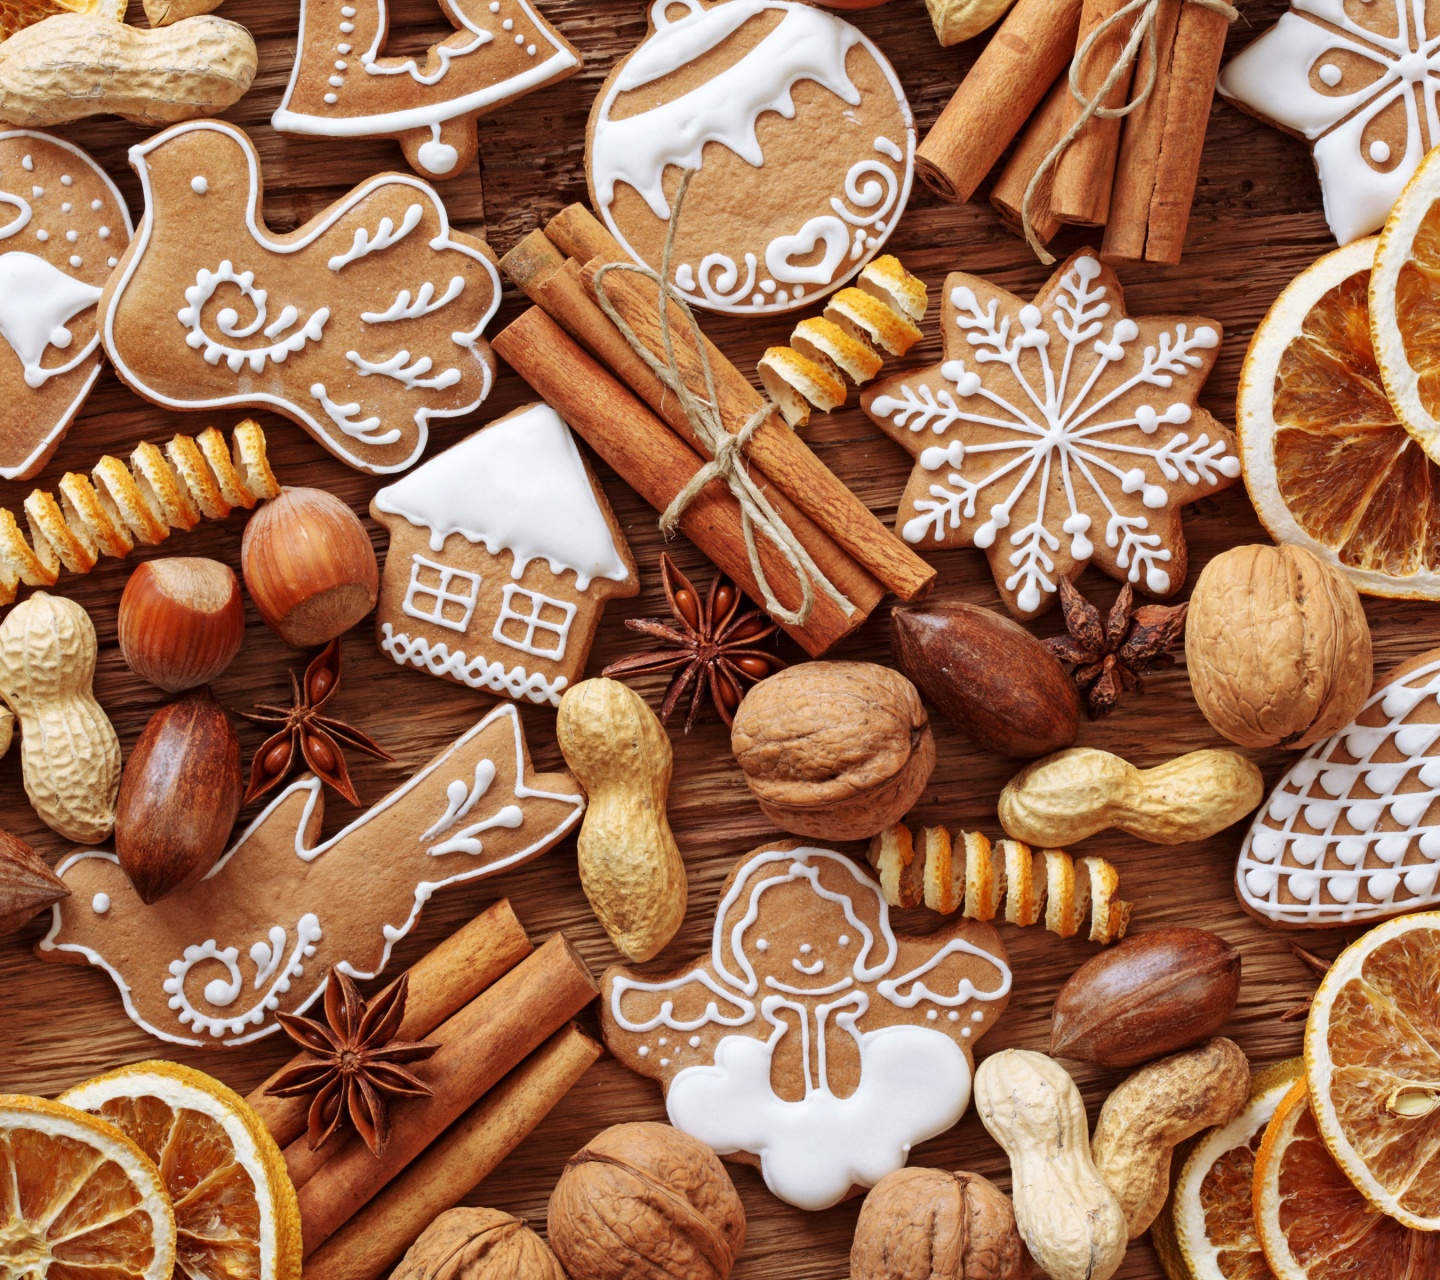 Nuts Cookies Christmas